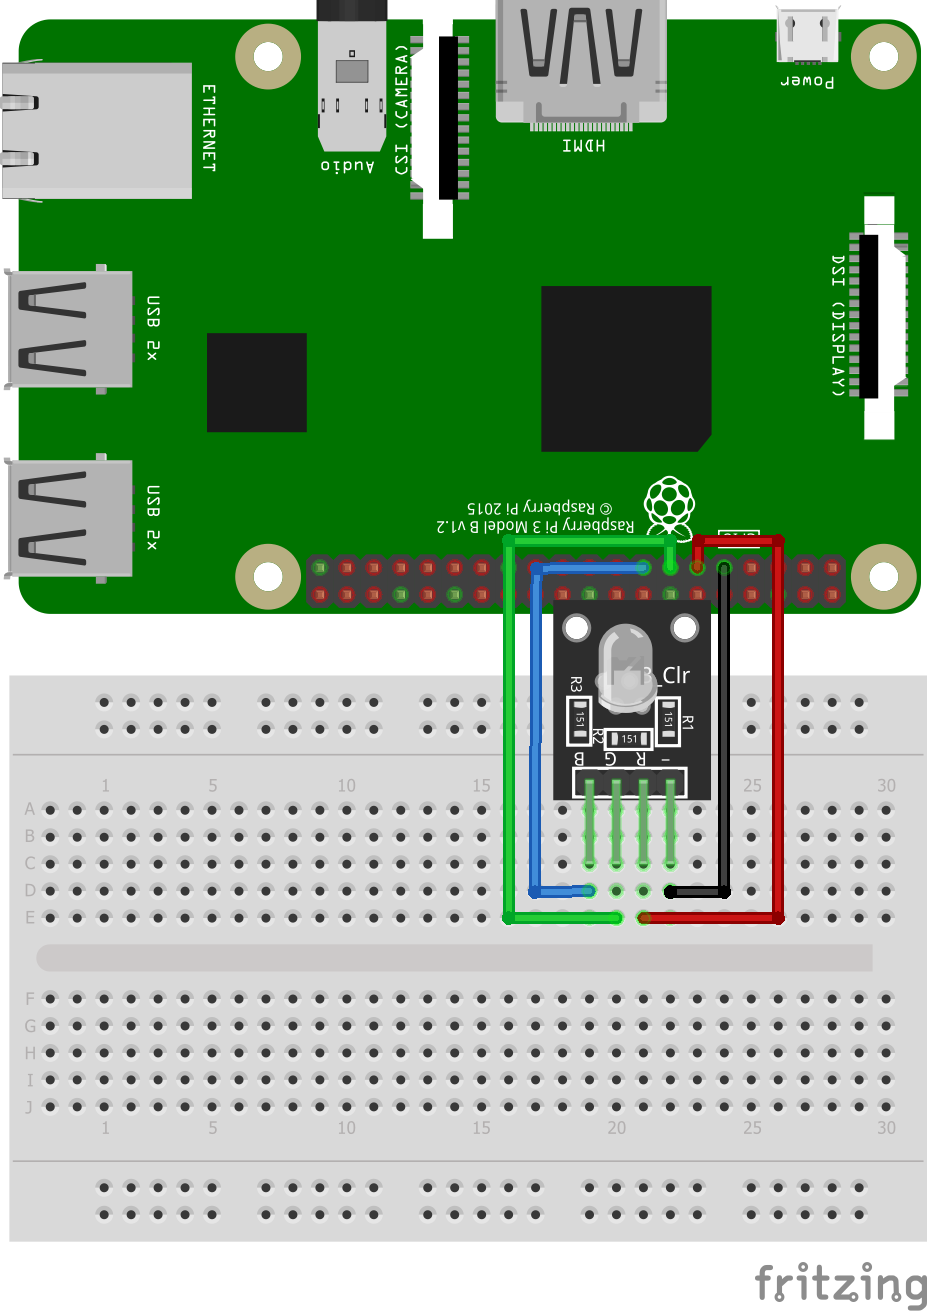 monarki Kære eftertænksom Interfacing RGB 3 Color LED Module KY-016 in Raspberry Pi - Iotguider